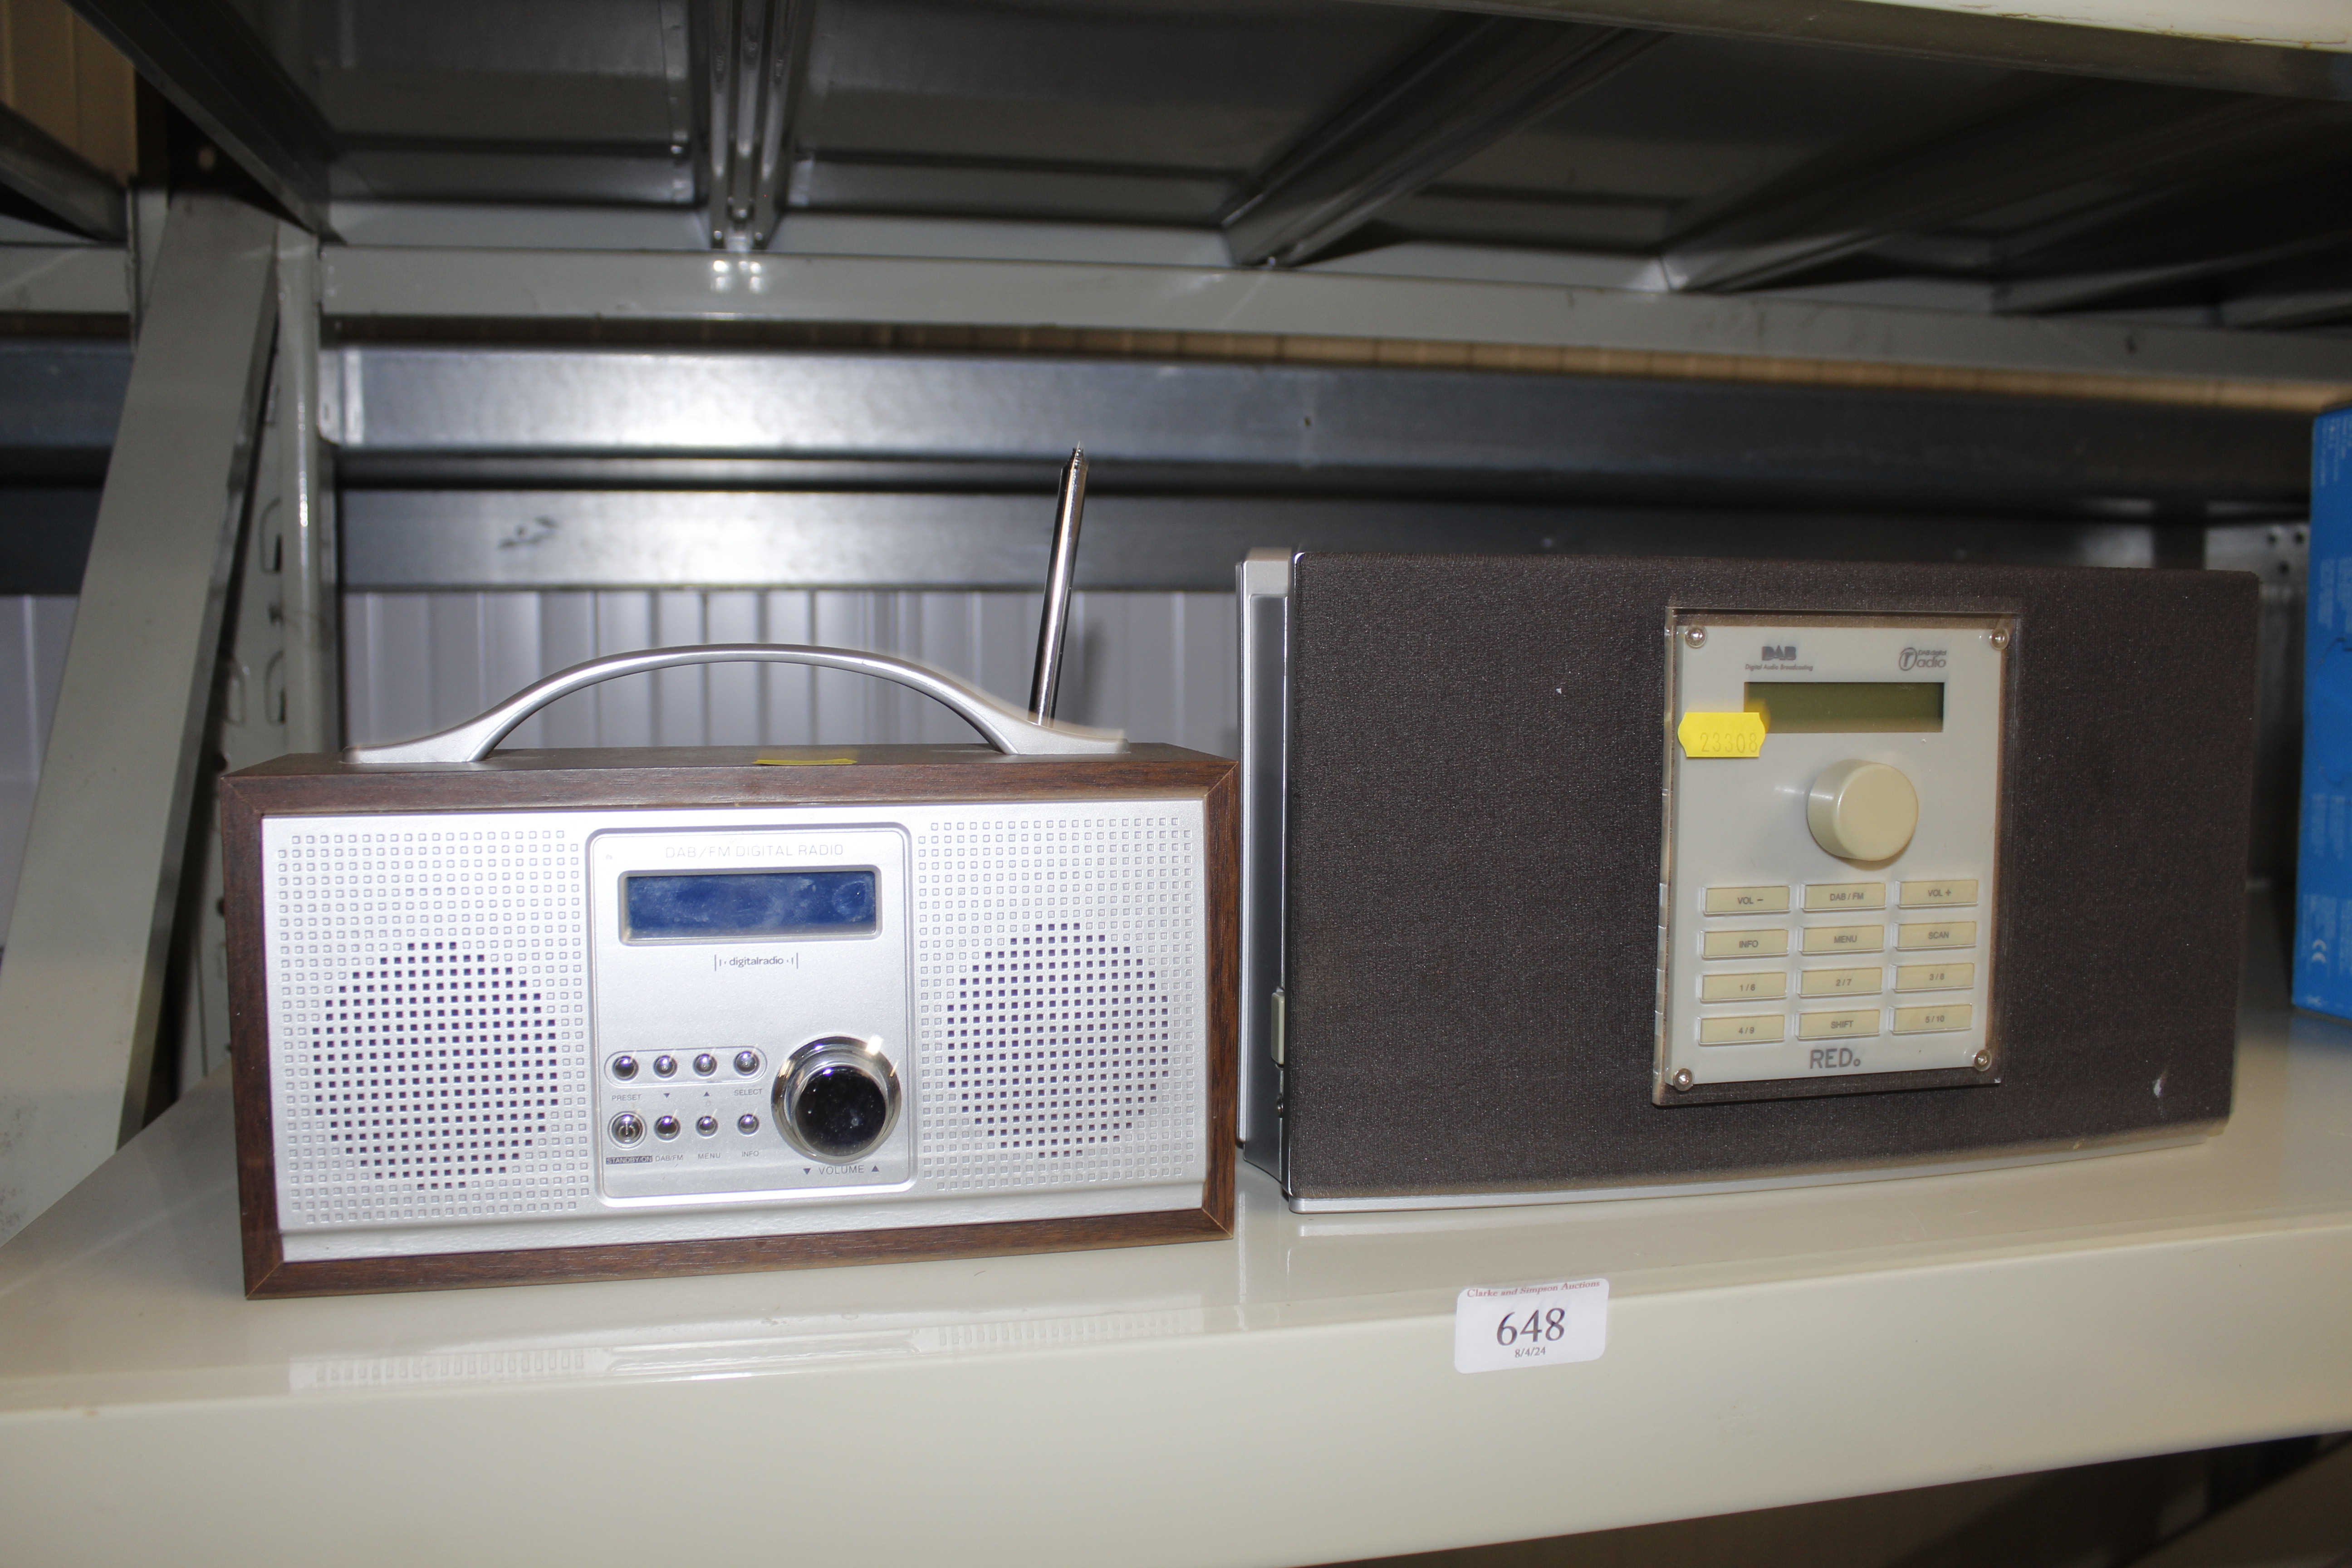 Two DAB radios